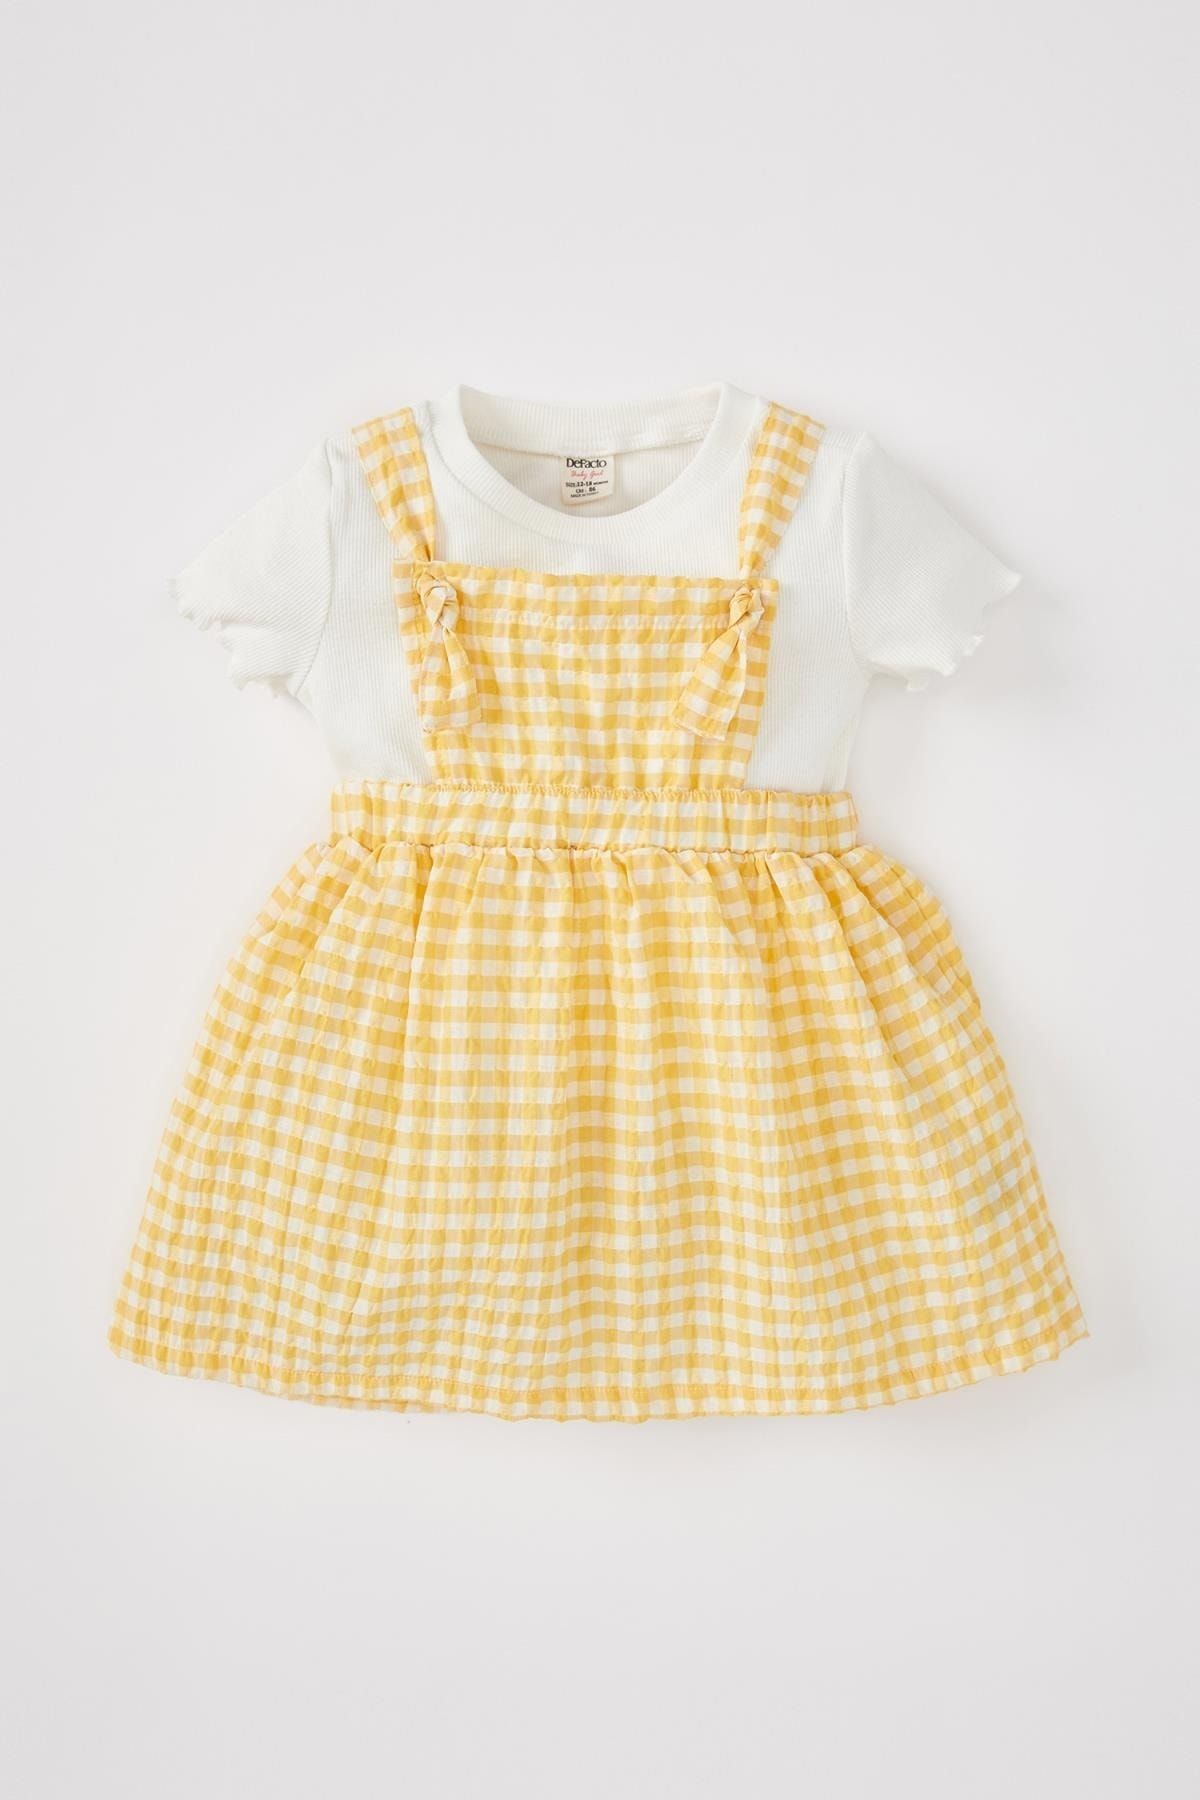 Defacto Kız Bebek Kısa Kollu Tişört Salopet Elbise 2'li Takım